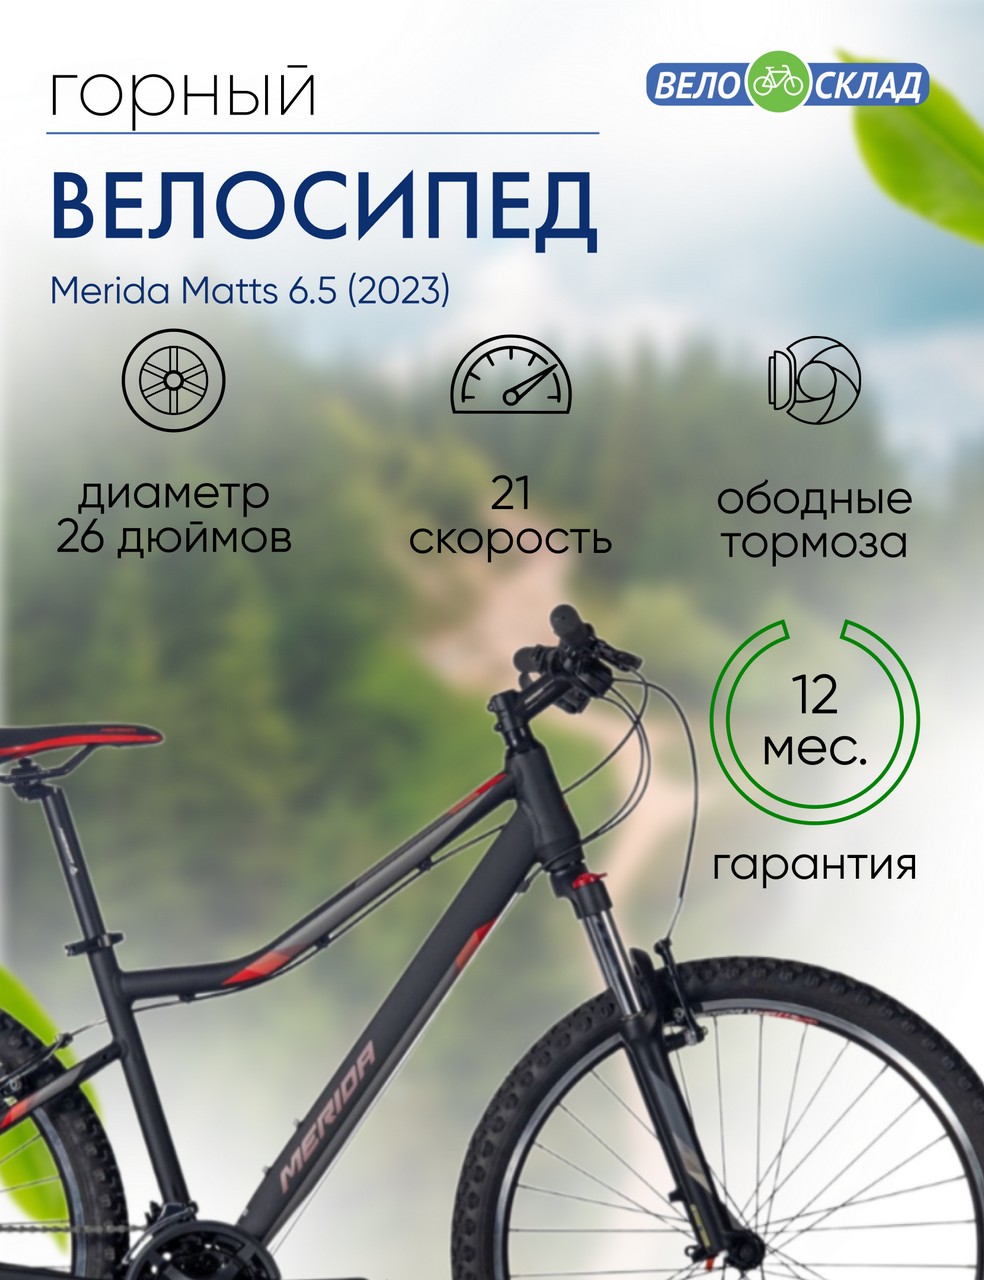 Женский велосипед Merida Matts 6.5, год 2023, цвет Черный-Красный, ростовка 18.5